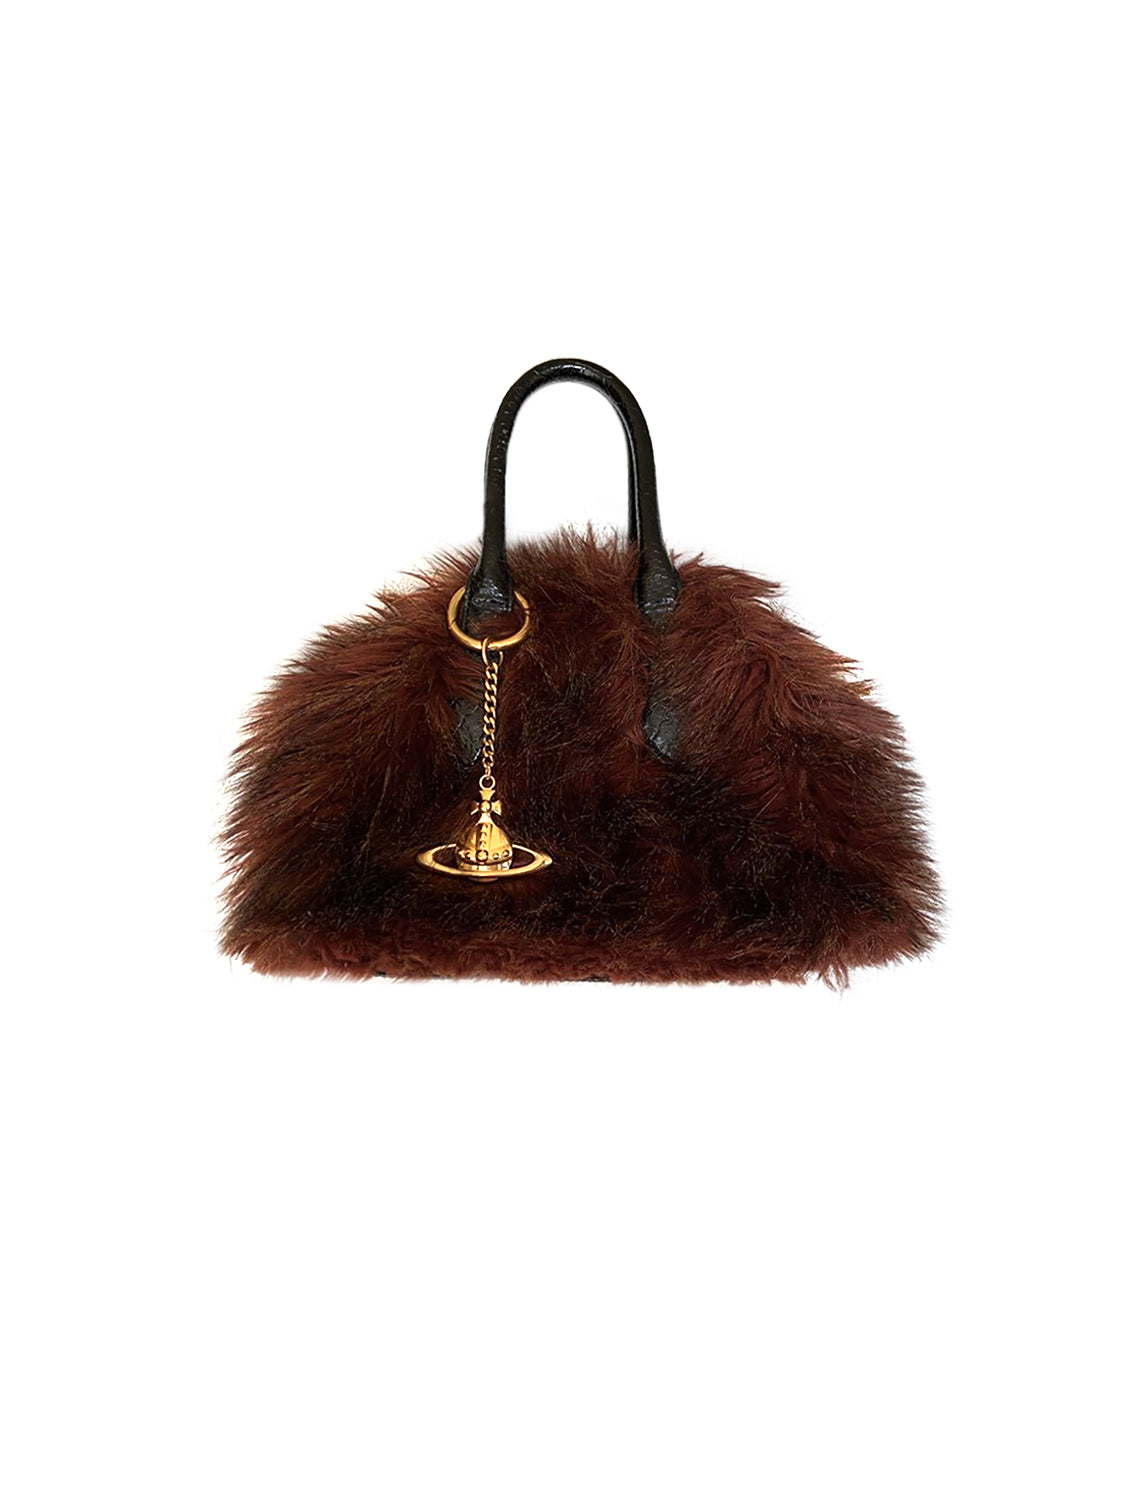 Vivienne Westwood 2000s Brown Furry Handbag